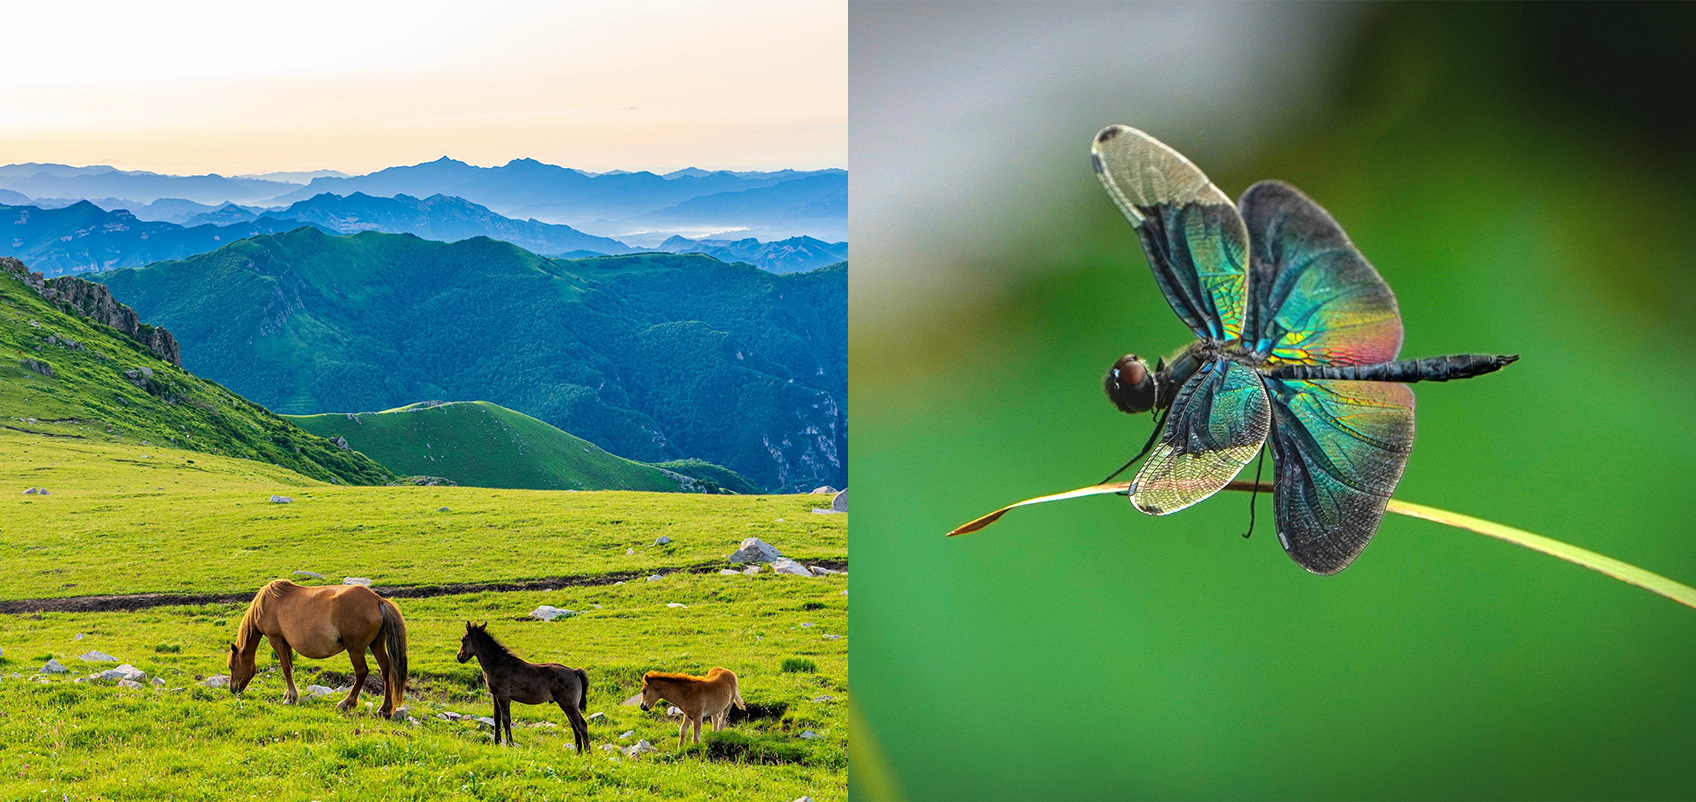 （左）山間部の草原で草を食べる馬の親子の写真（右）色鮮やかな昆虫が草にとまっている写真